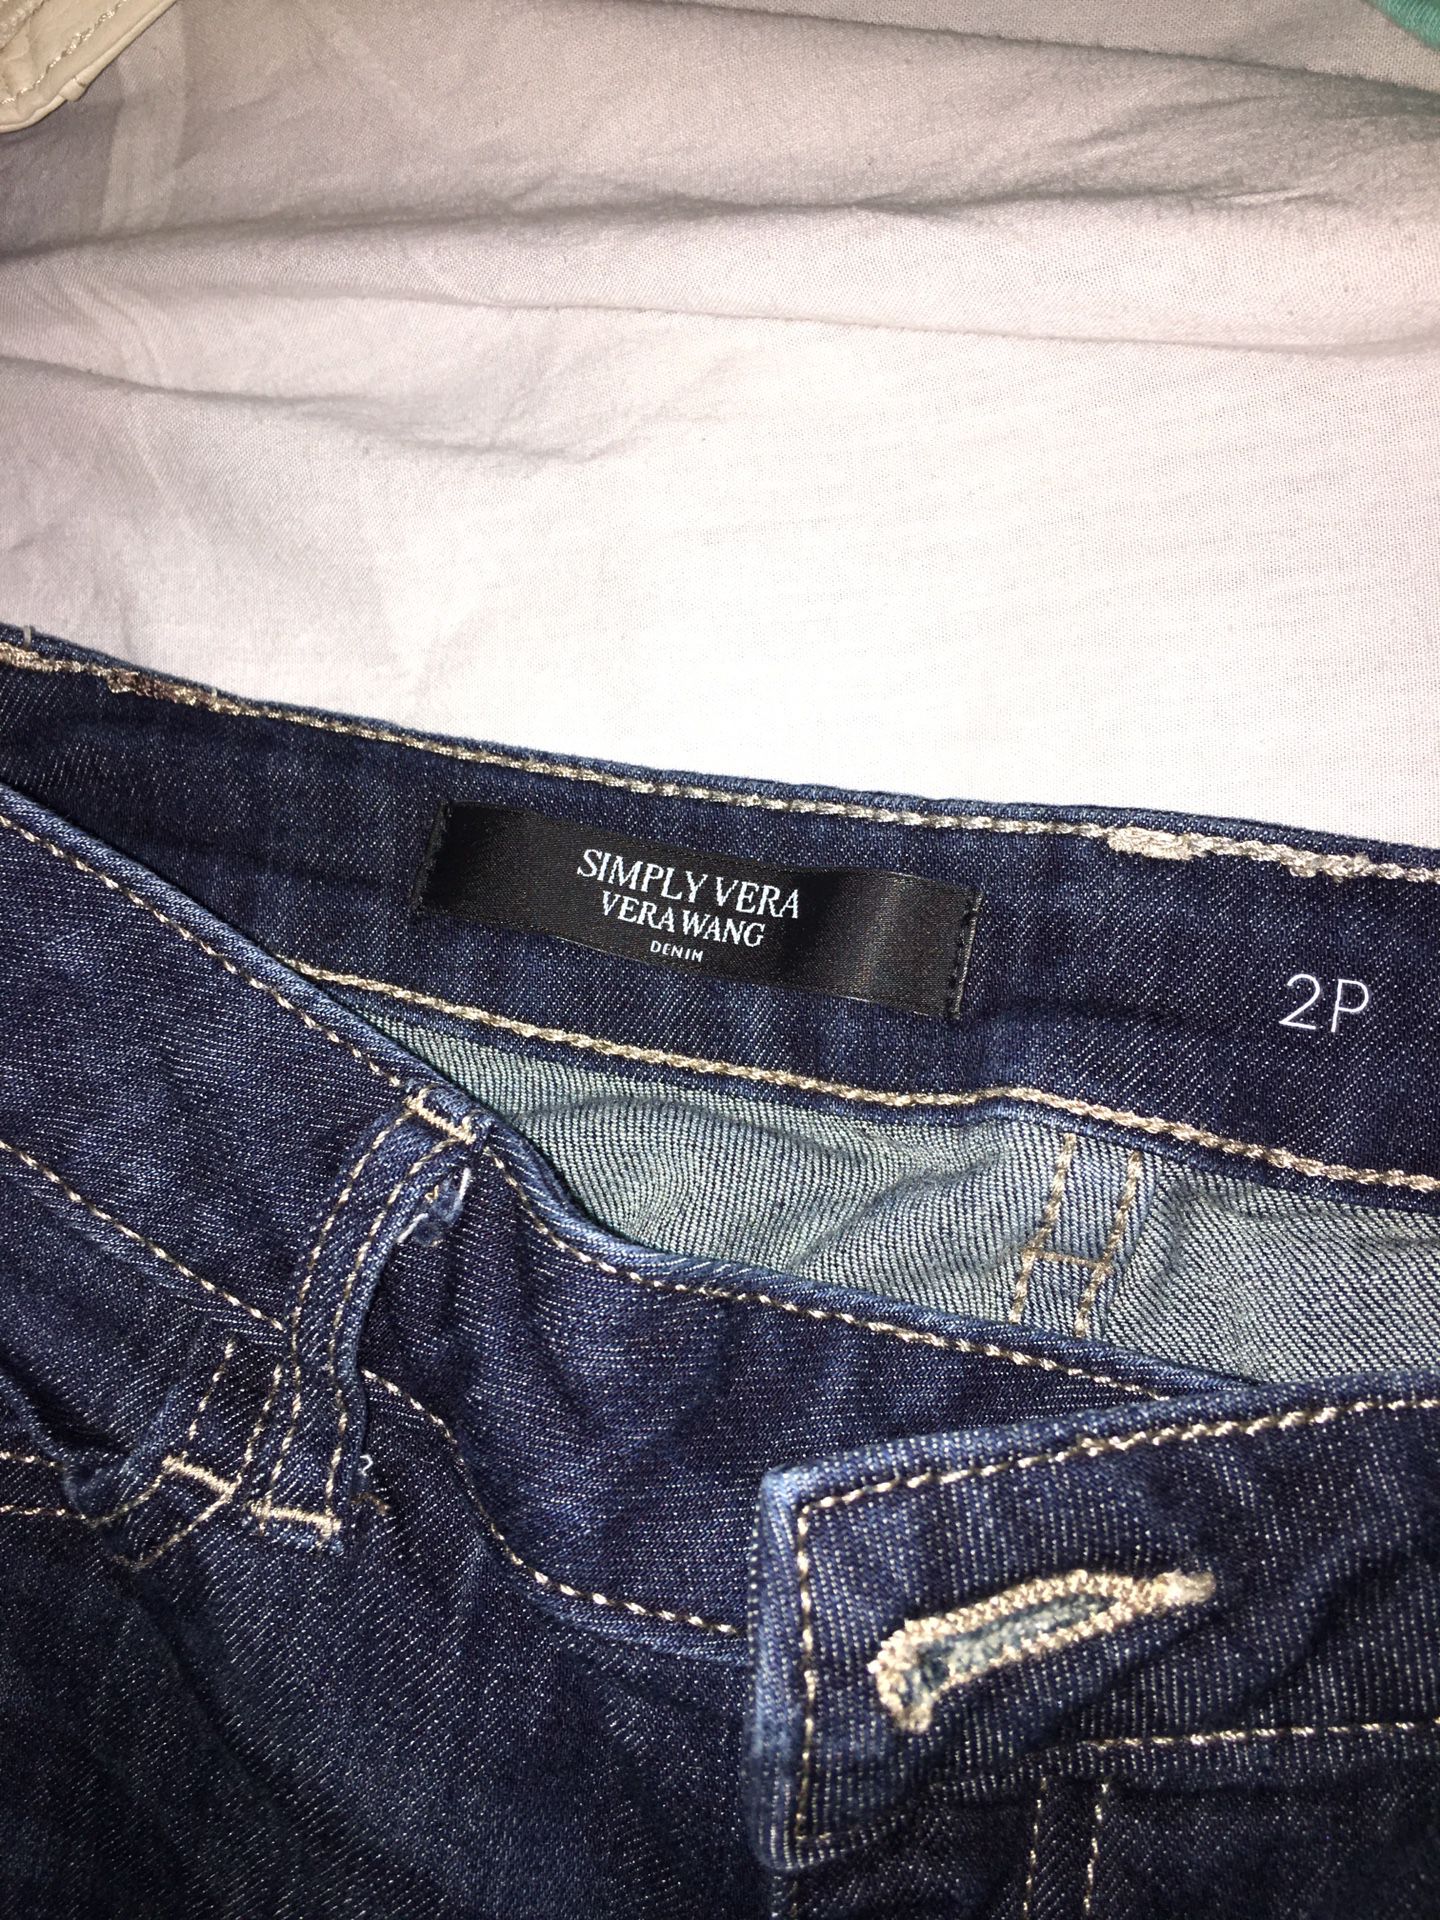 Woman’s Vera wang boyfriend jeans for Sale in Algona, WA - OfferUp